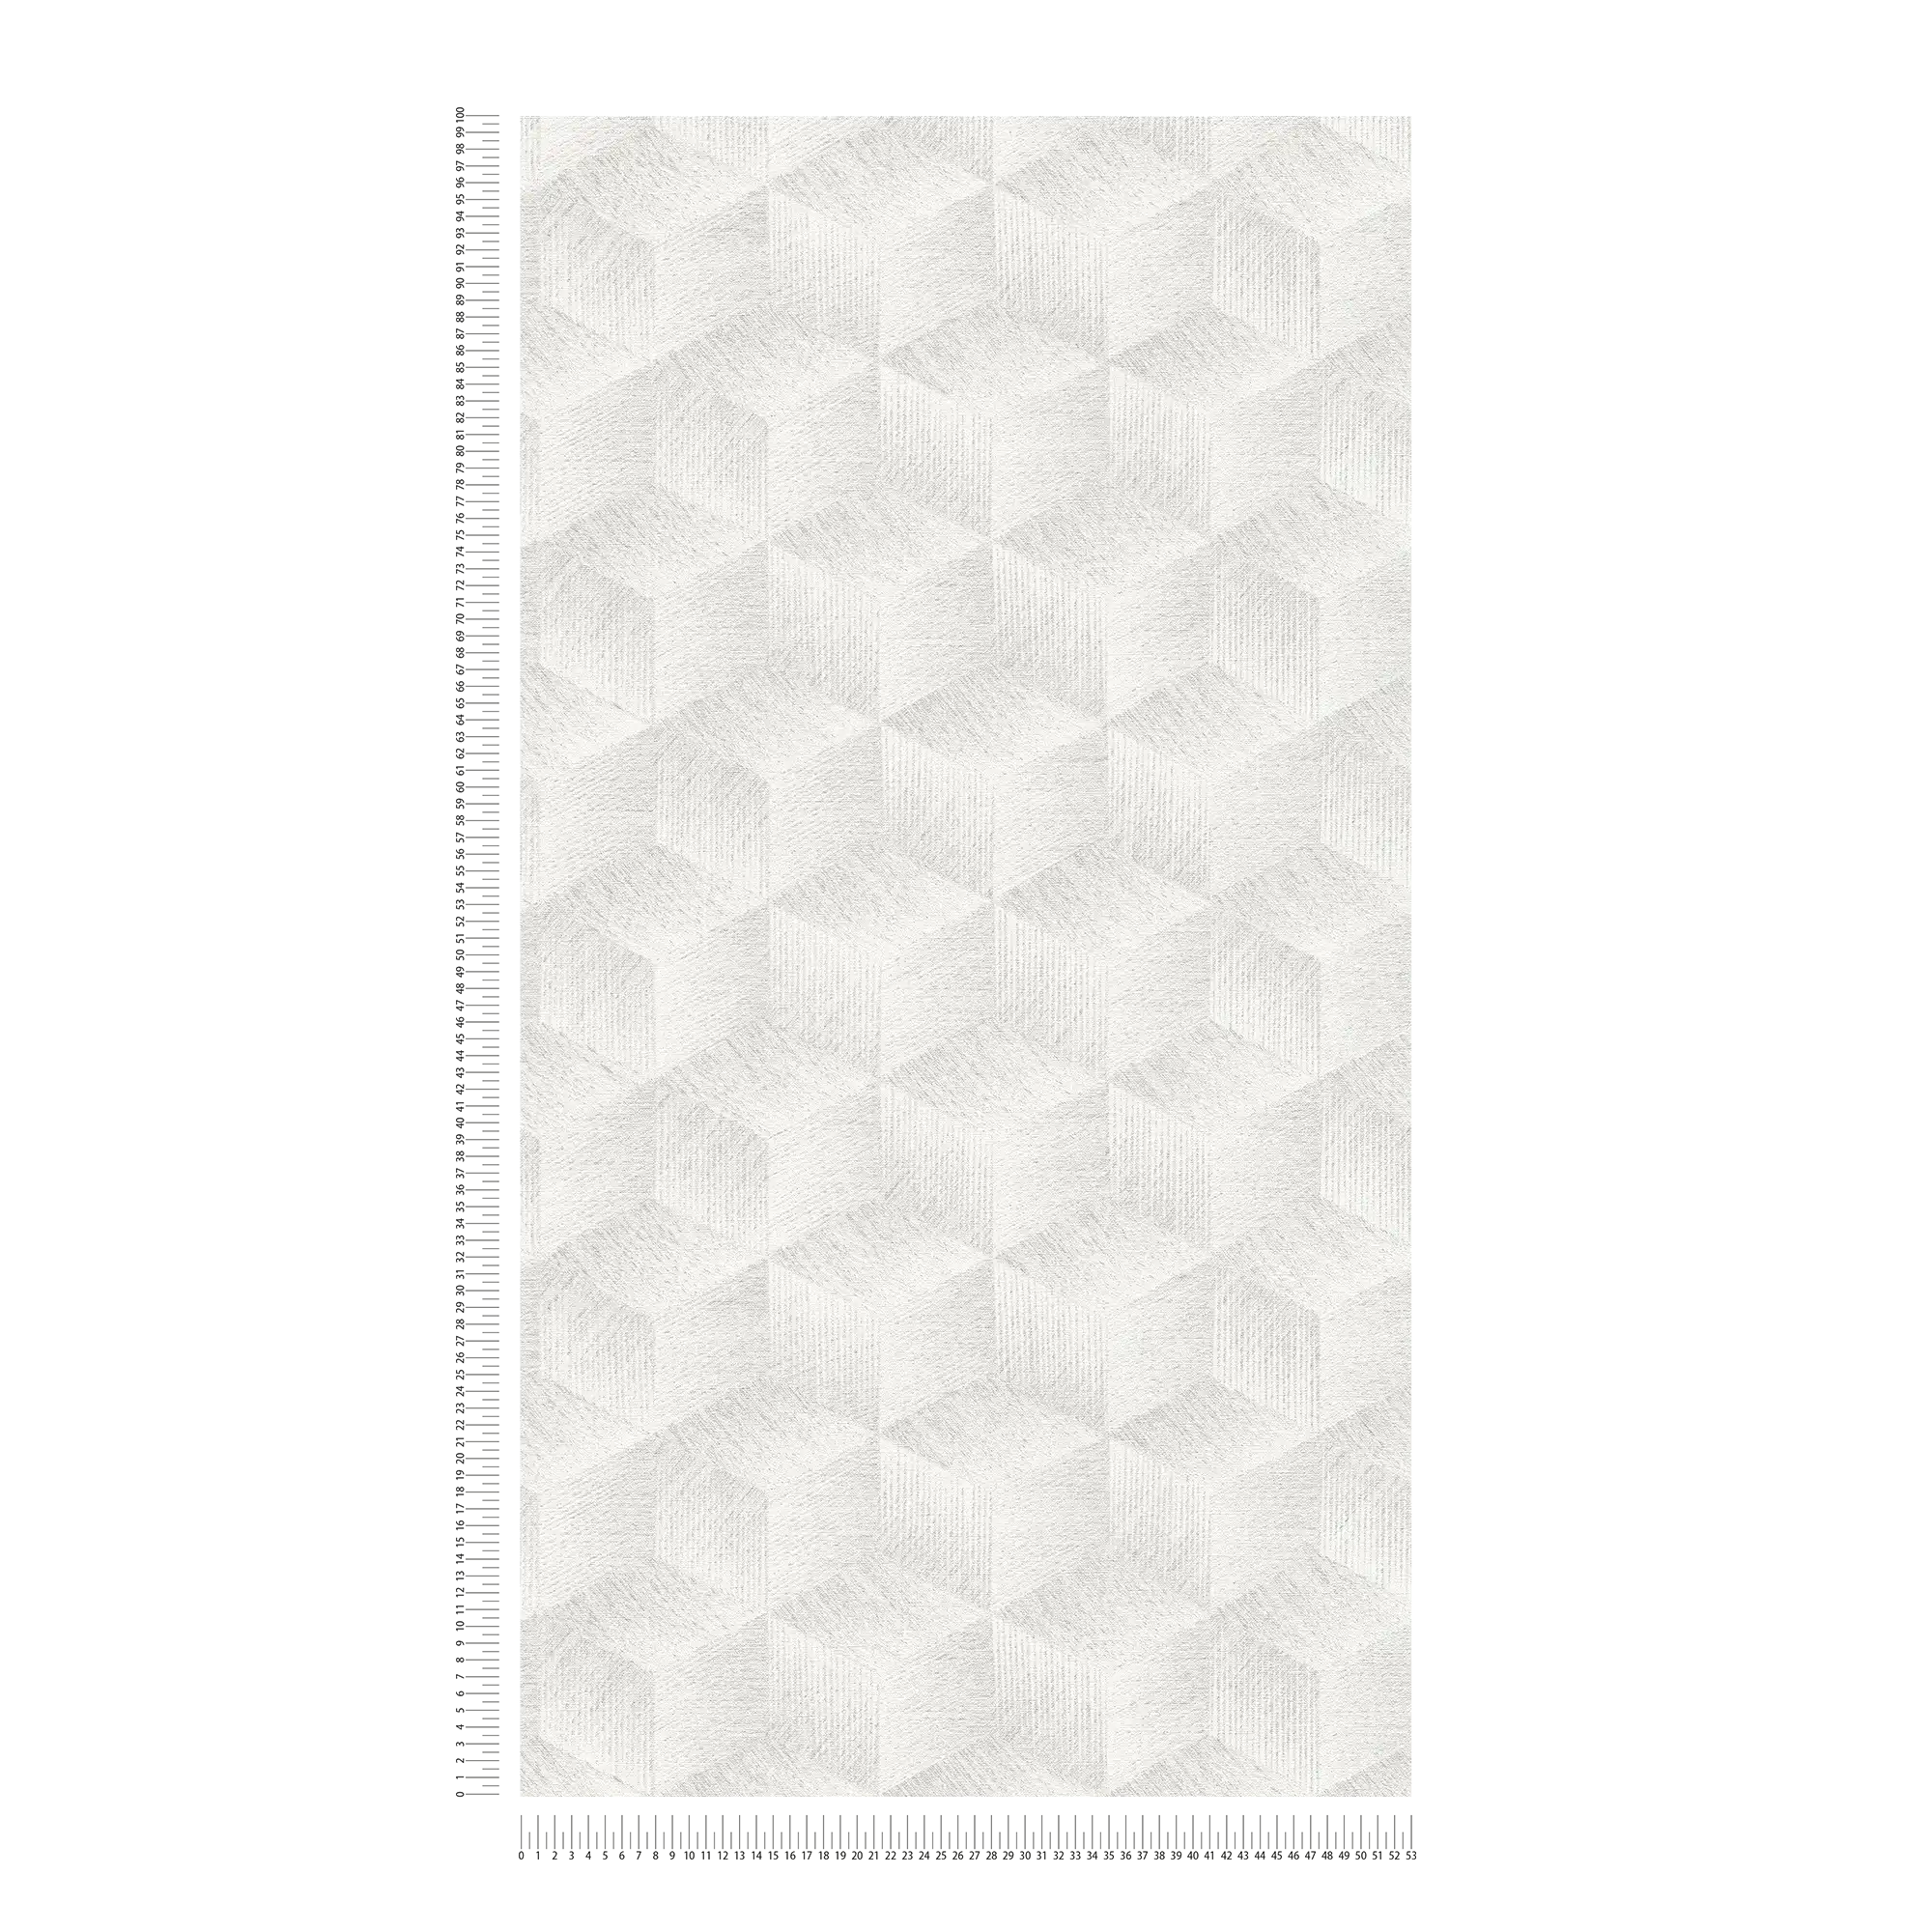             PVC-vrij 3D optisch behang met vierkant patroon & glanseffect - Grijs, Wit
        